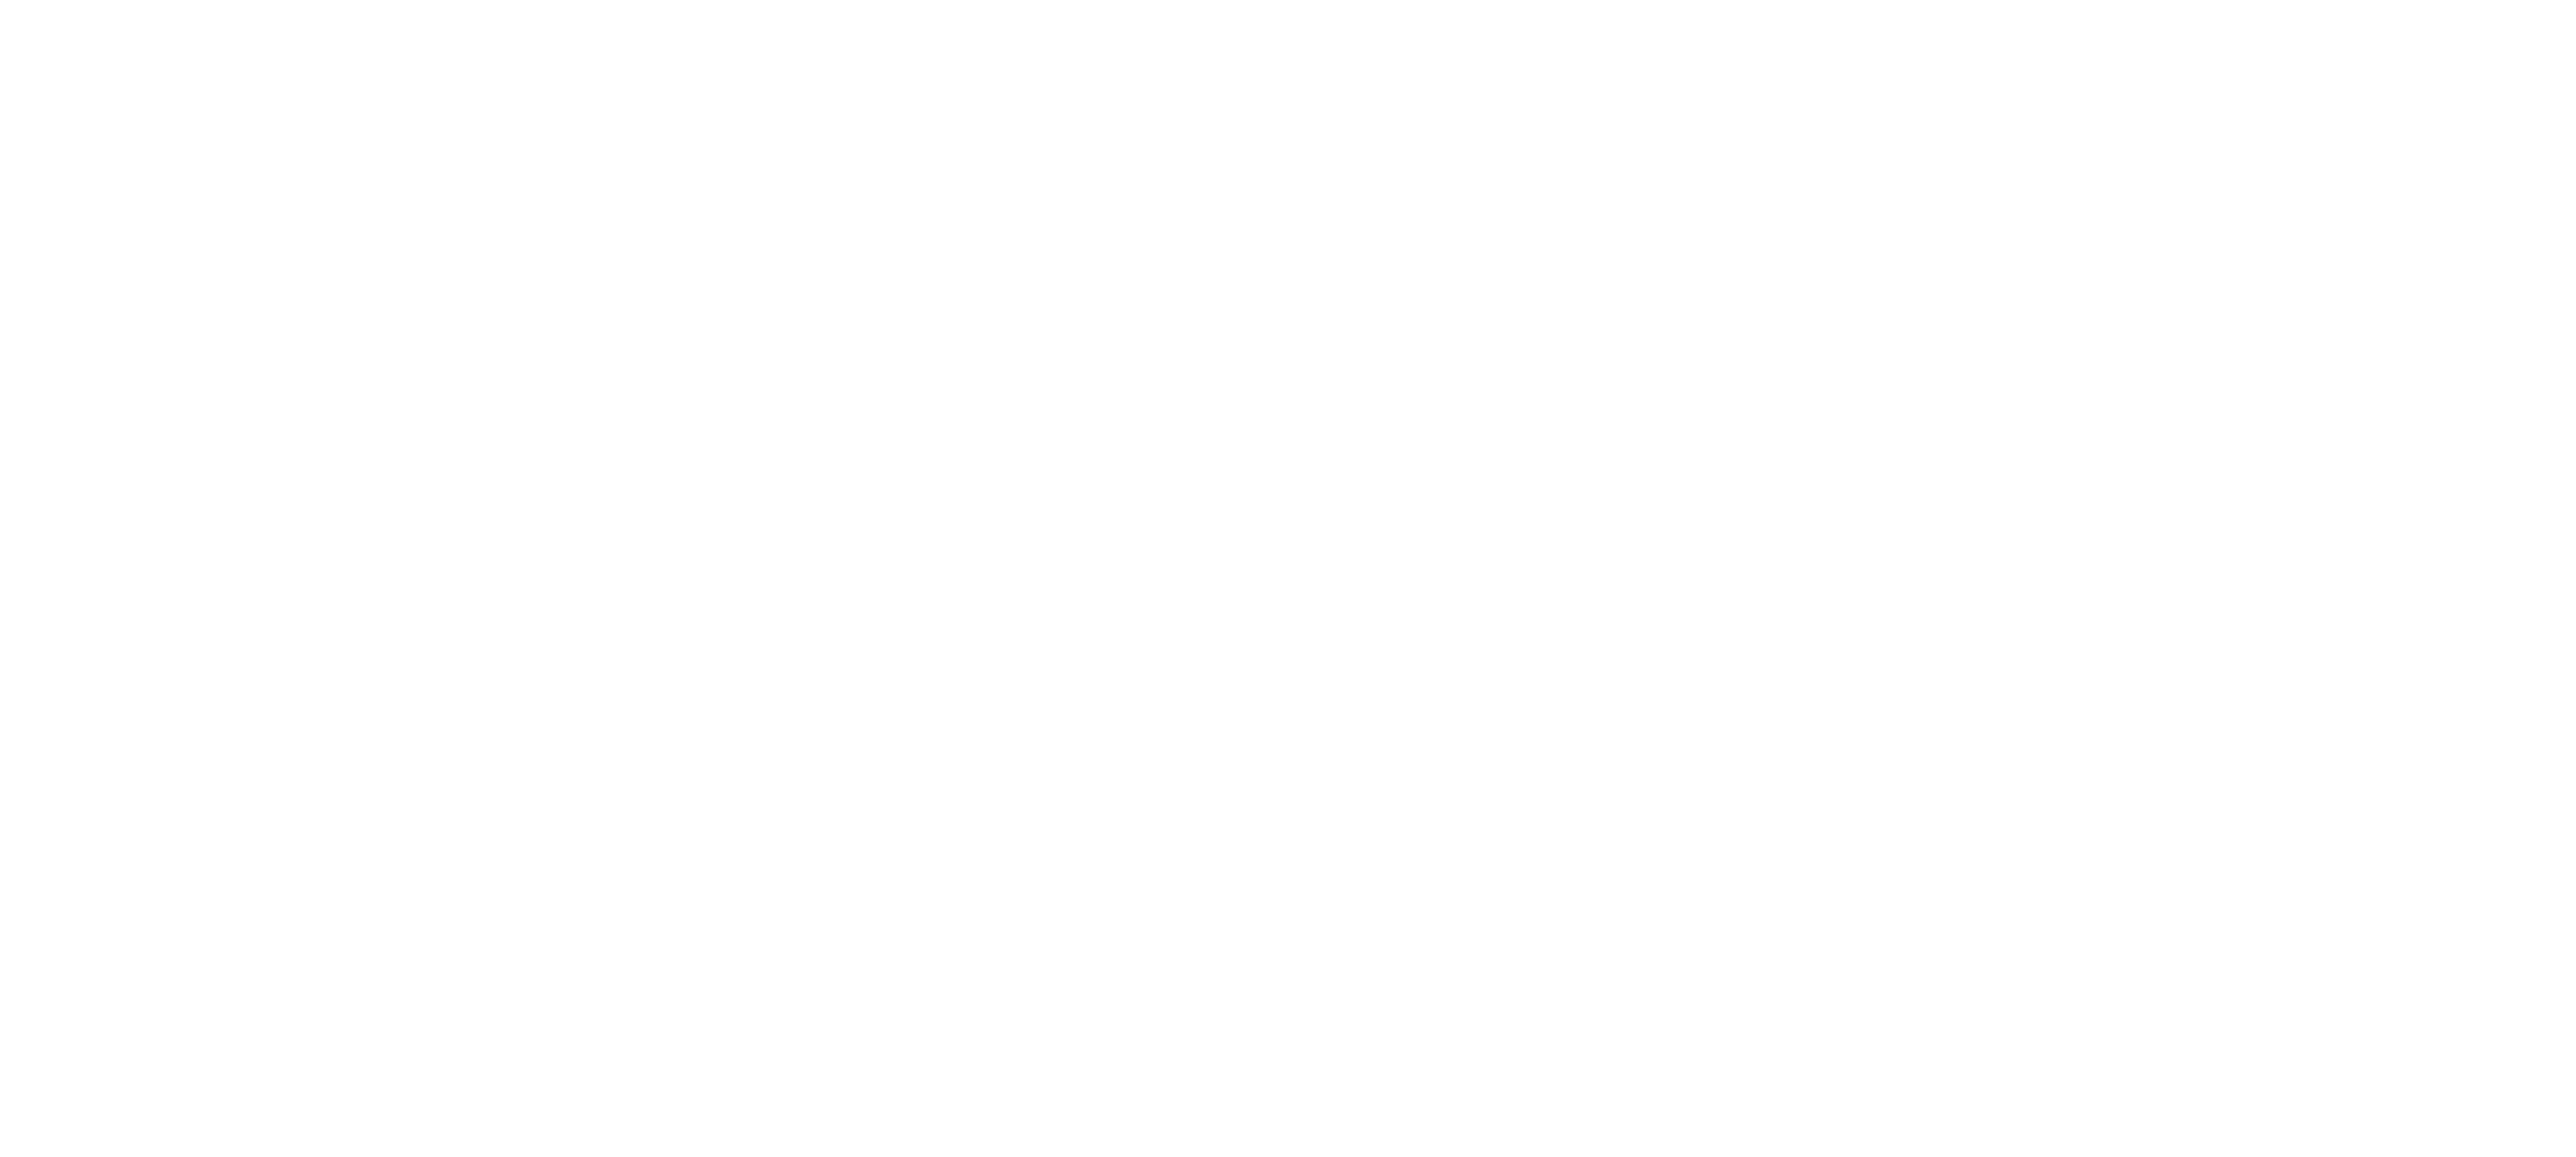 React Native Paris